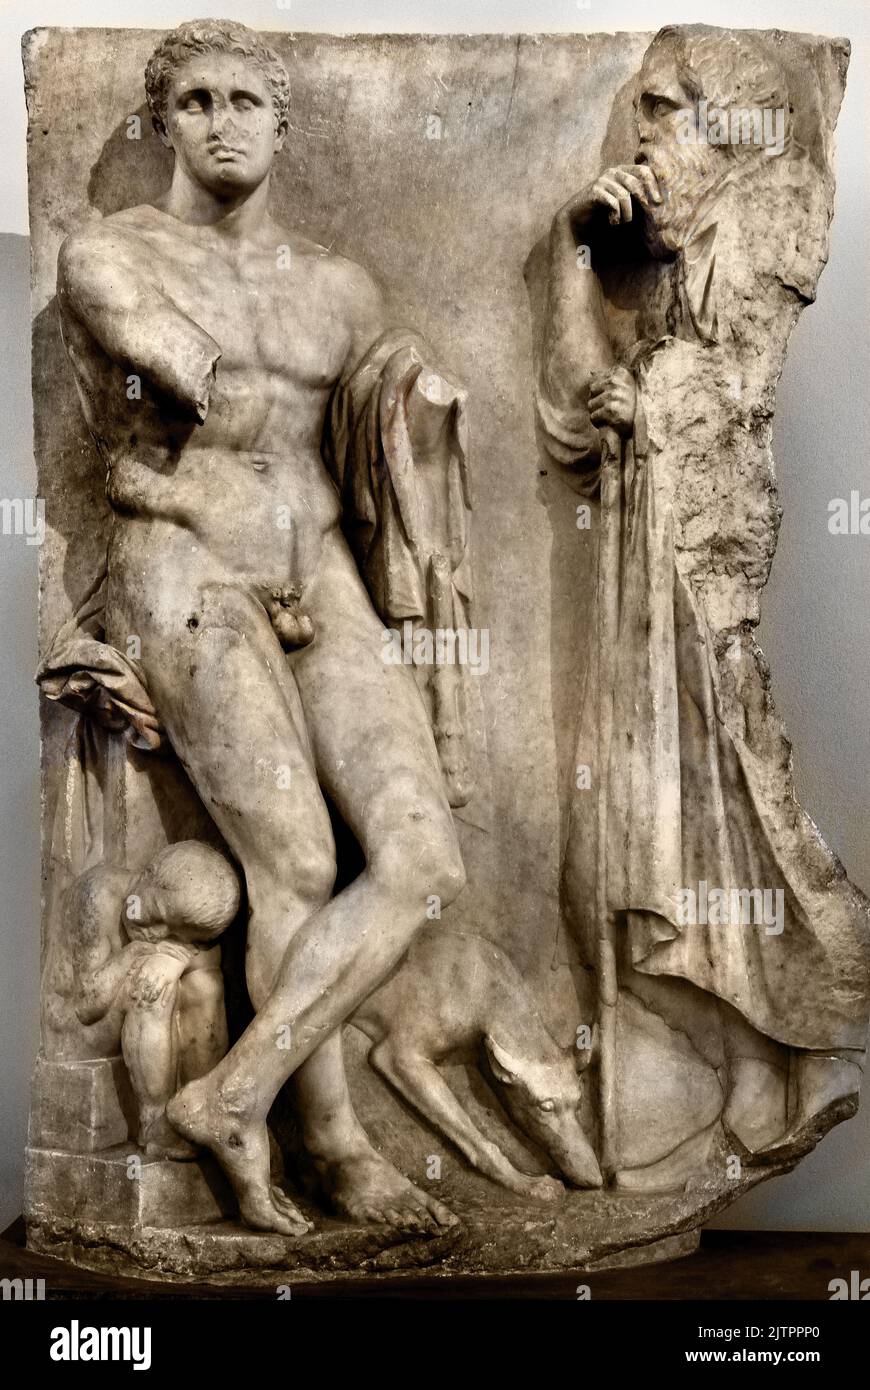 Funerario de mármol de Stele, Juventud, encontrado en el lecho del río Ilissos en Atenas, 340 aC, Museo Arqueológico Nacional en Atenas. Foto de stock